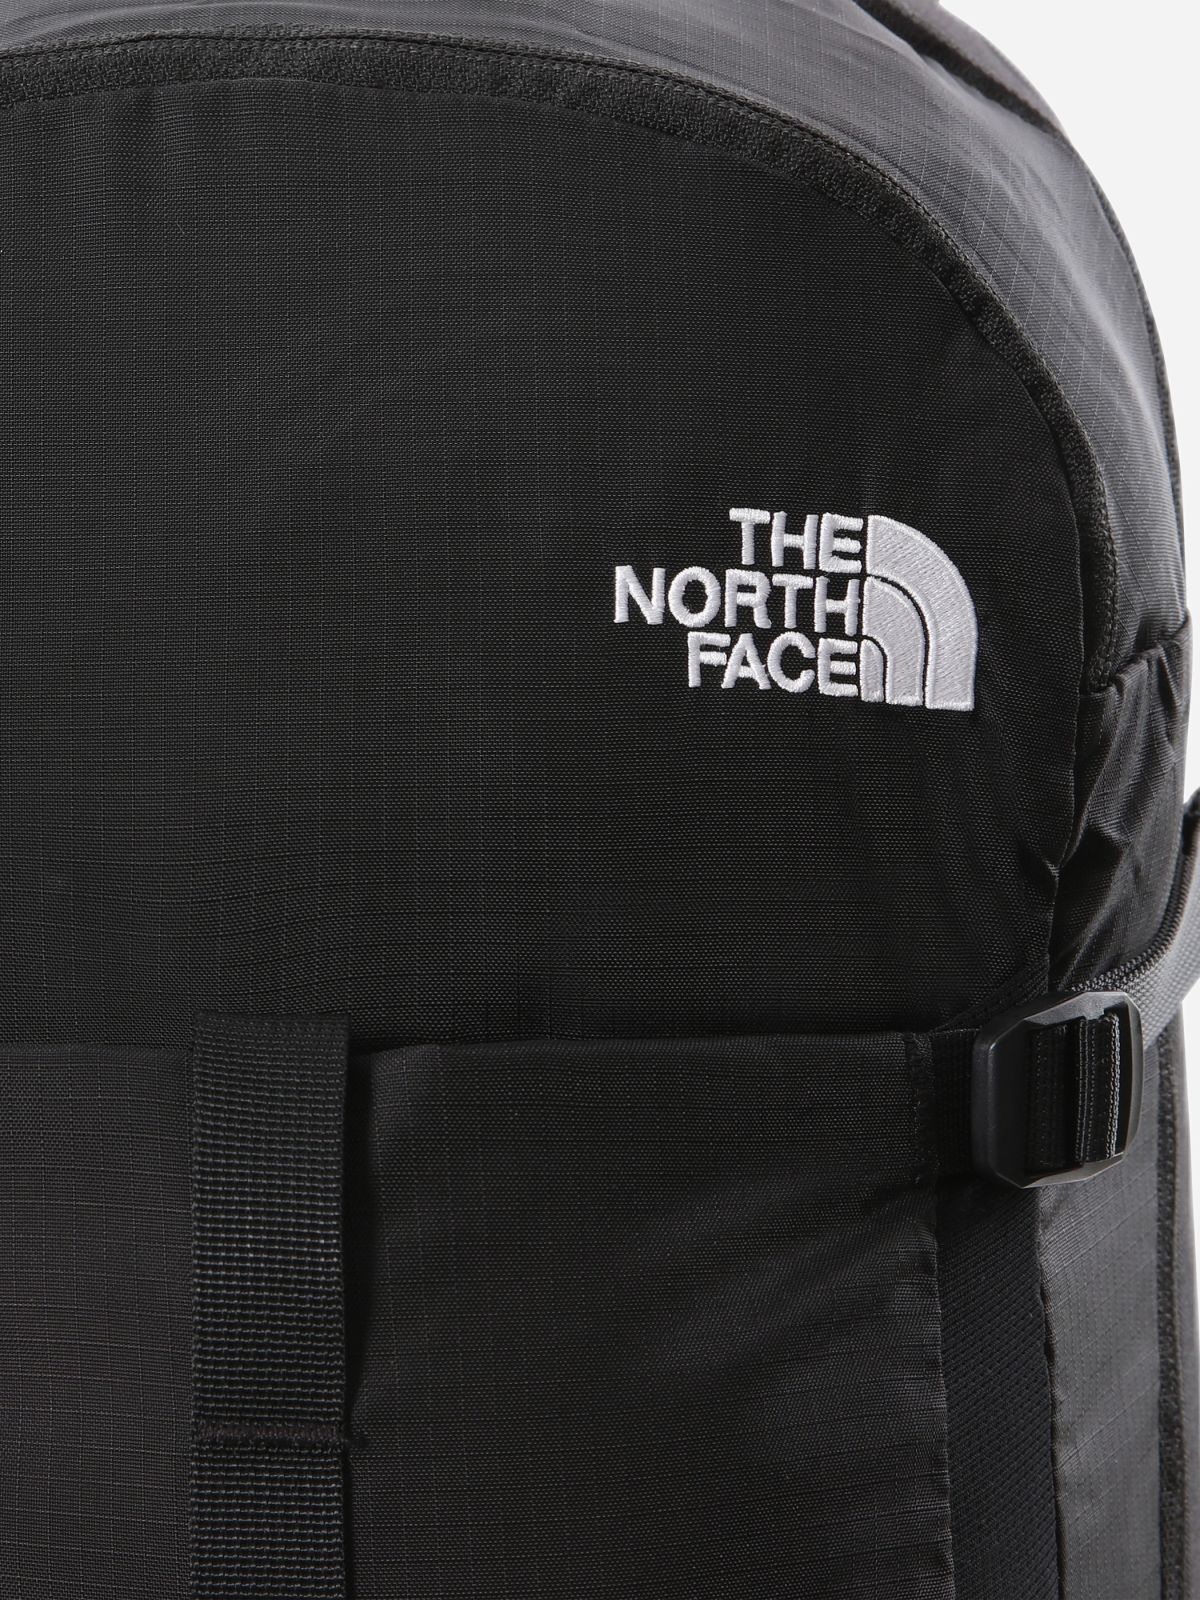  תיק גב עם לוגו 36 ליטר / גברים של THE NORTH FACE